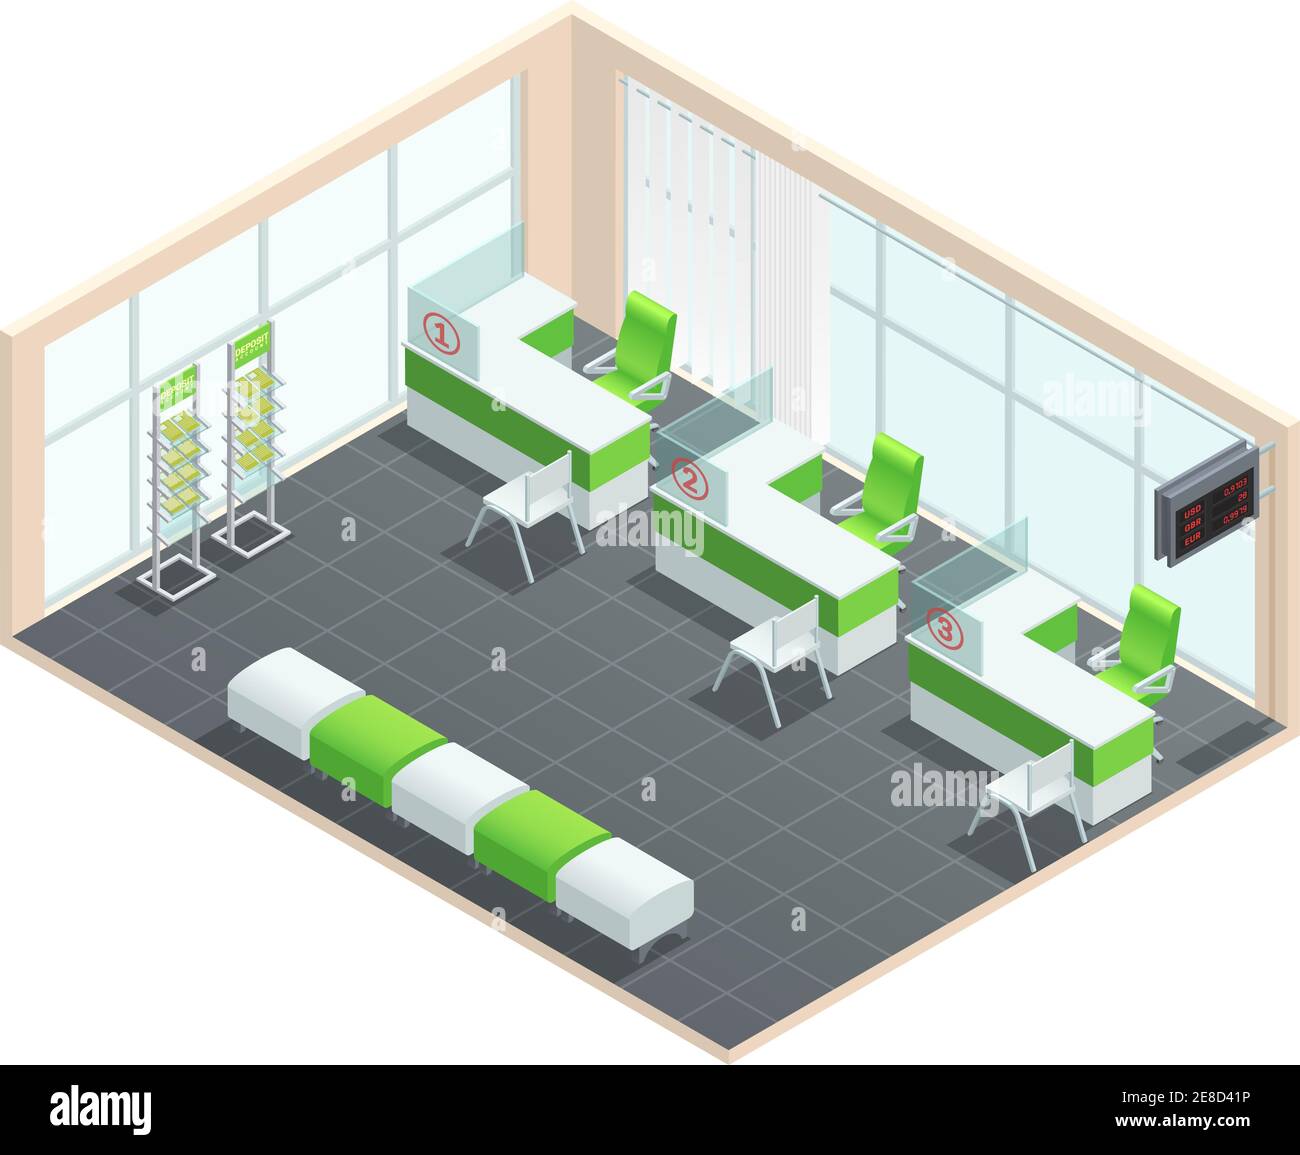 Concetto isometrico colore della sala manager banca con verde e. illustrazione vettoriale della tavolozza bianca Illustrazione Vettoriale